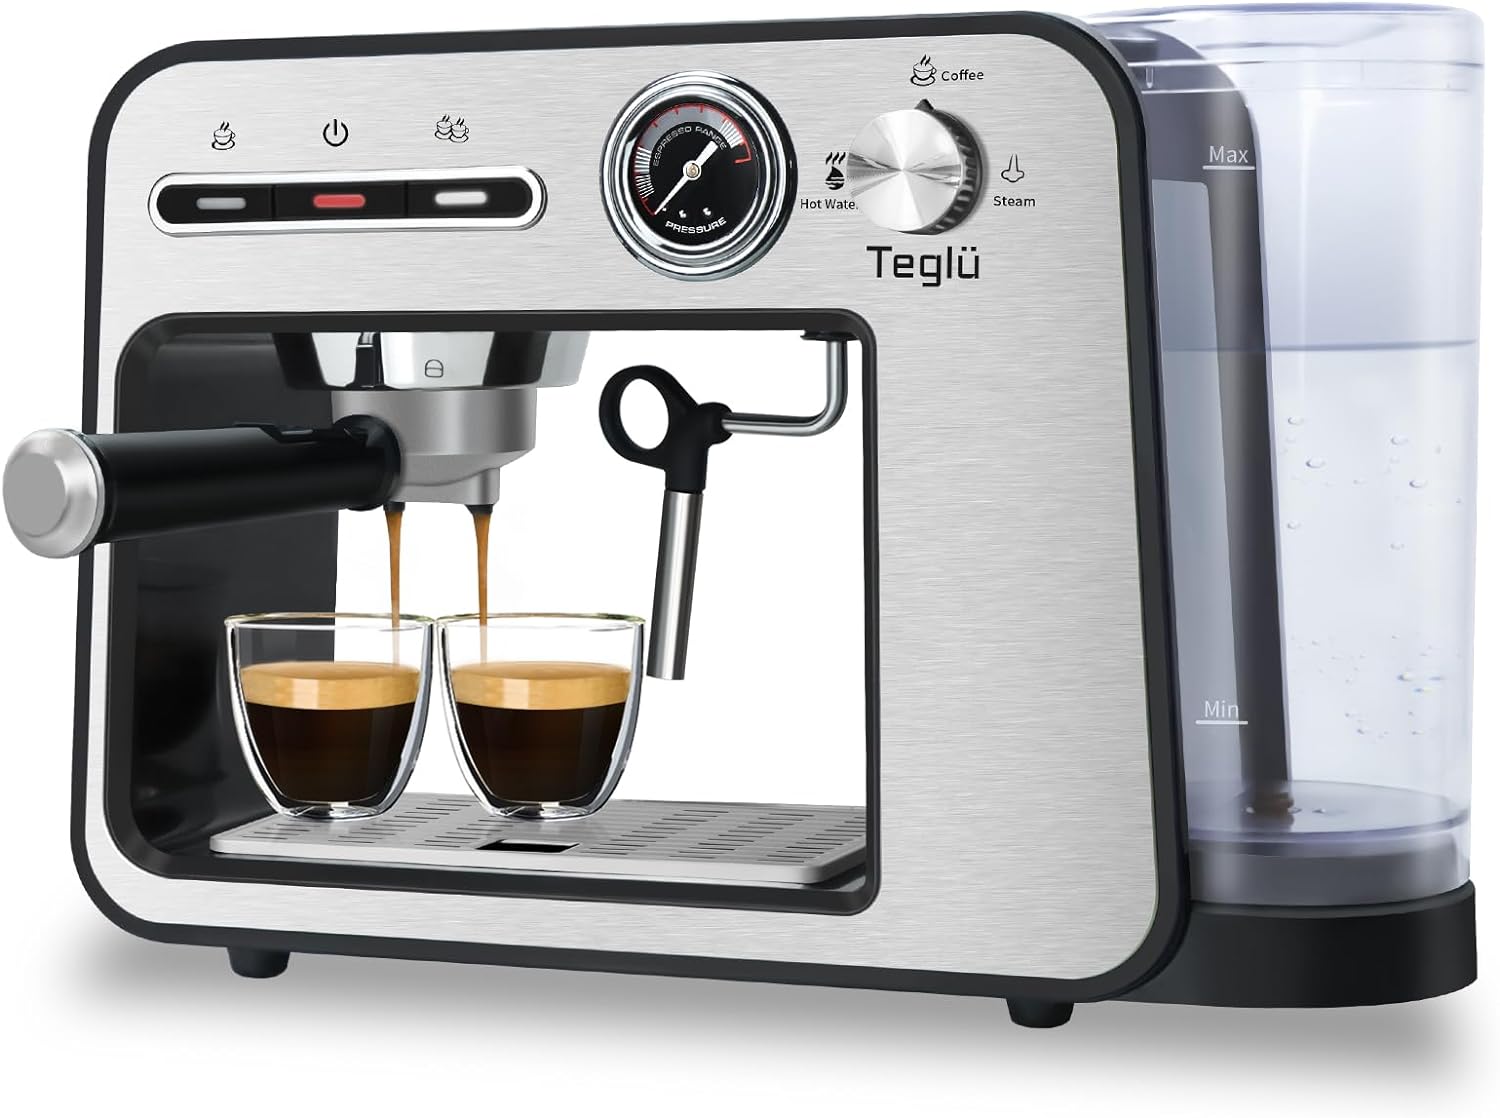 Teglu Espresso Machine 20 Bar Review